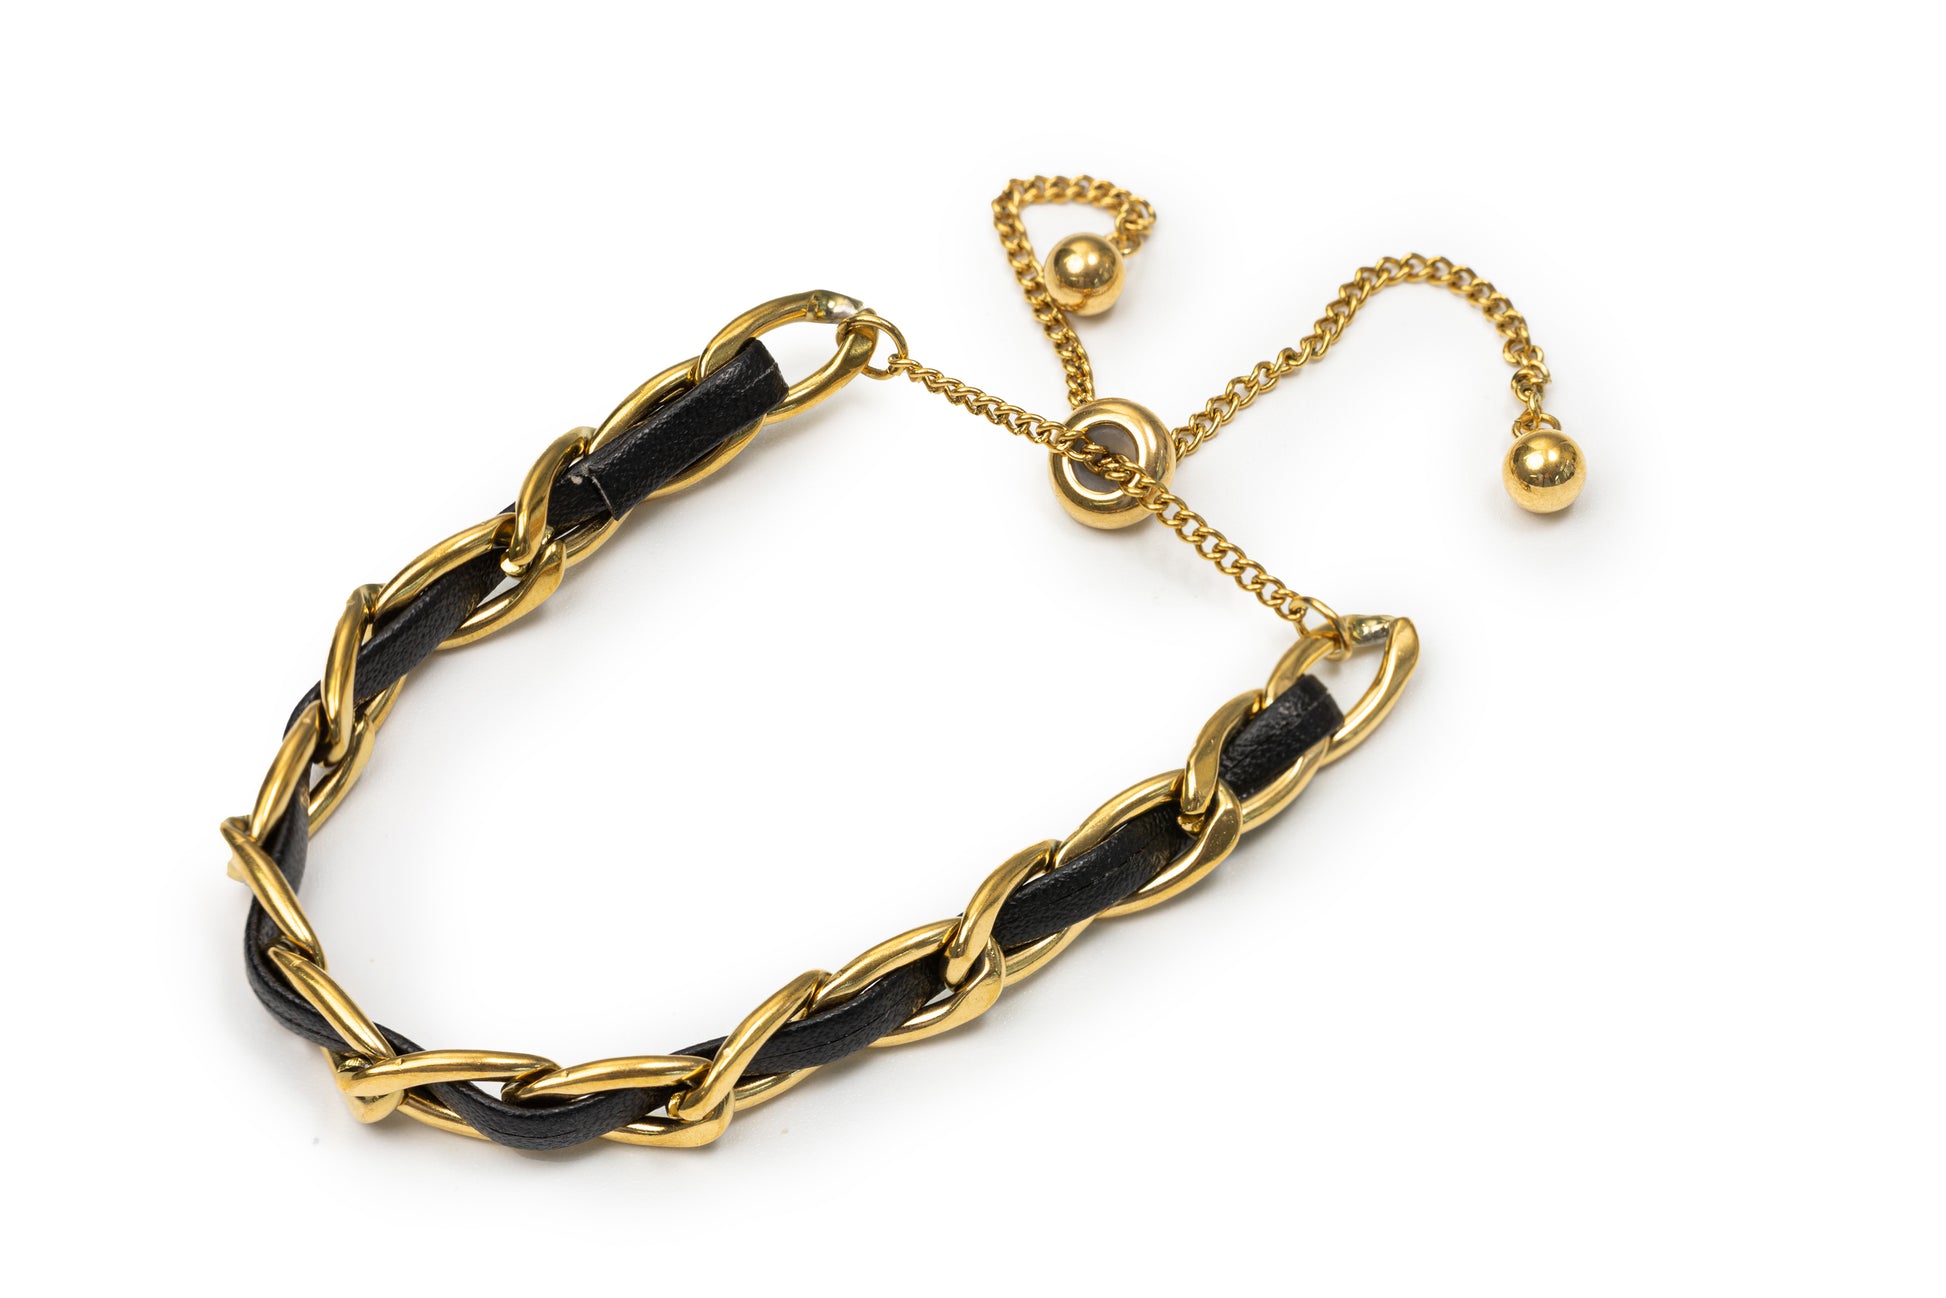 Planderful Golden Leather Bracelet - Golden Bracelet for Women